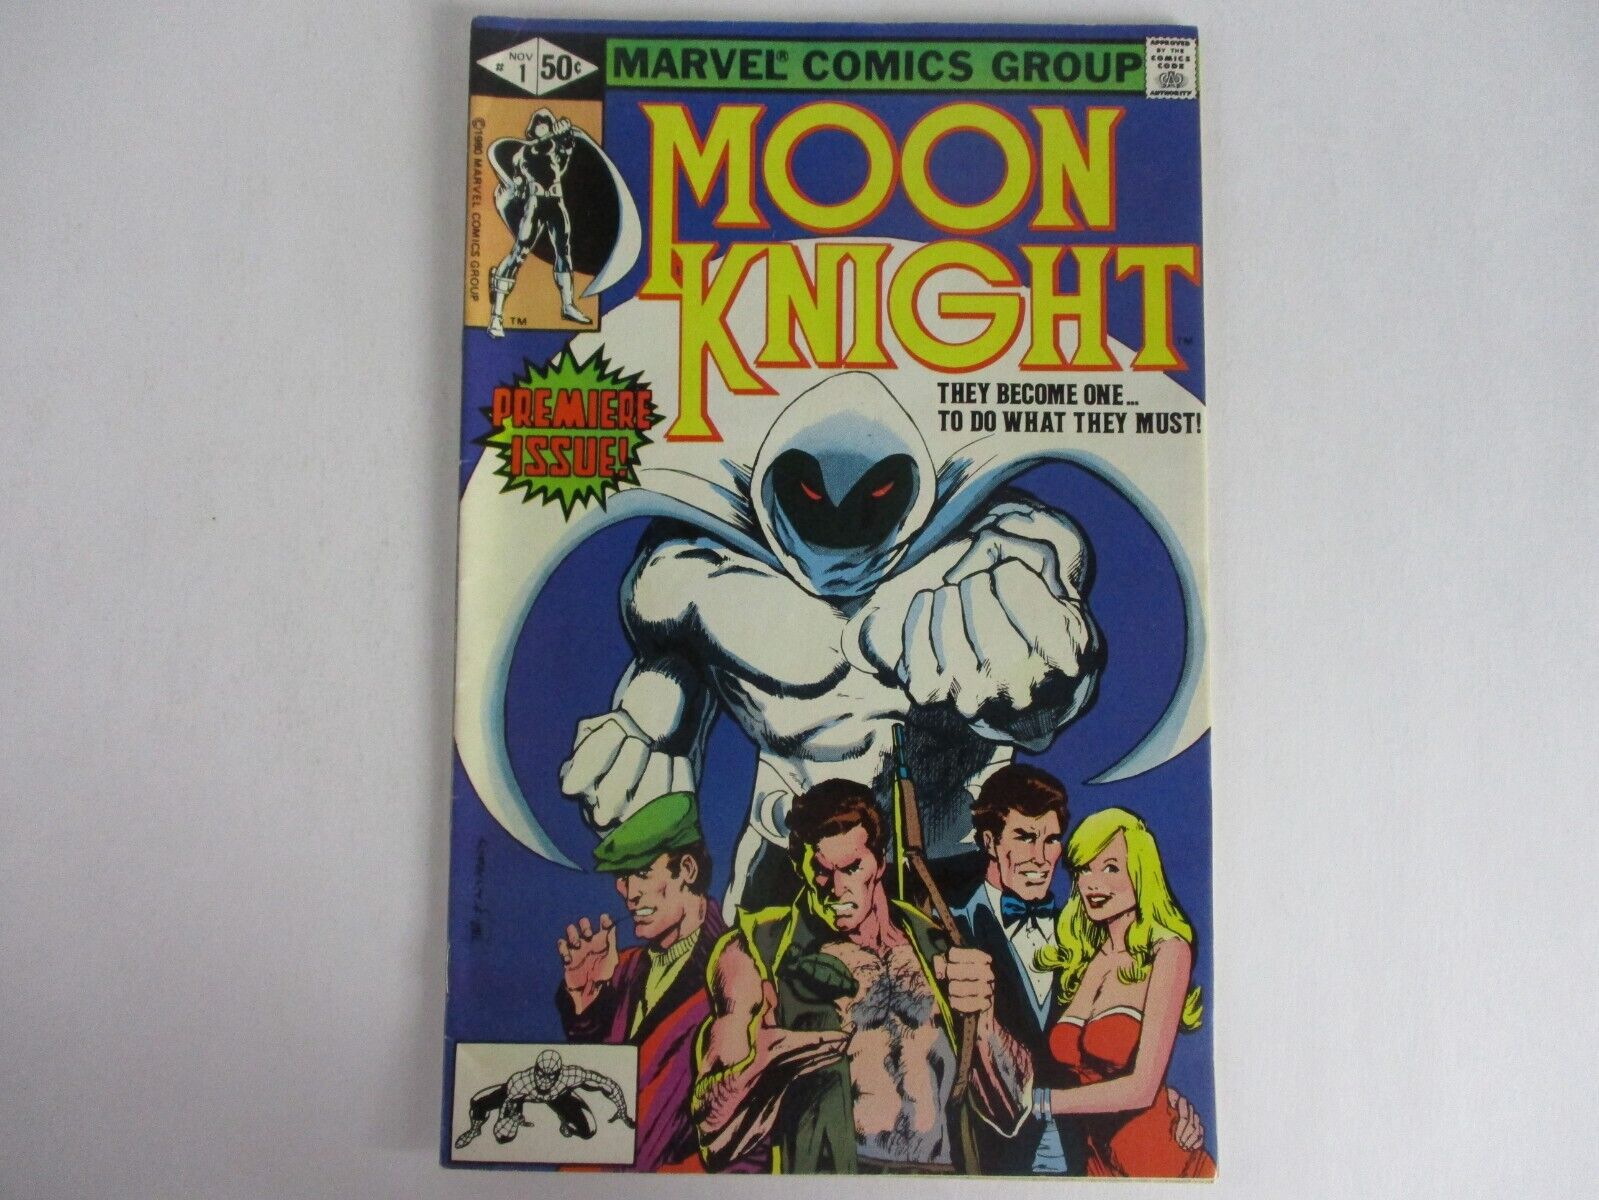 Marvel Comics MOON KNIGHT #1 November 1980 LOOKS GREAT